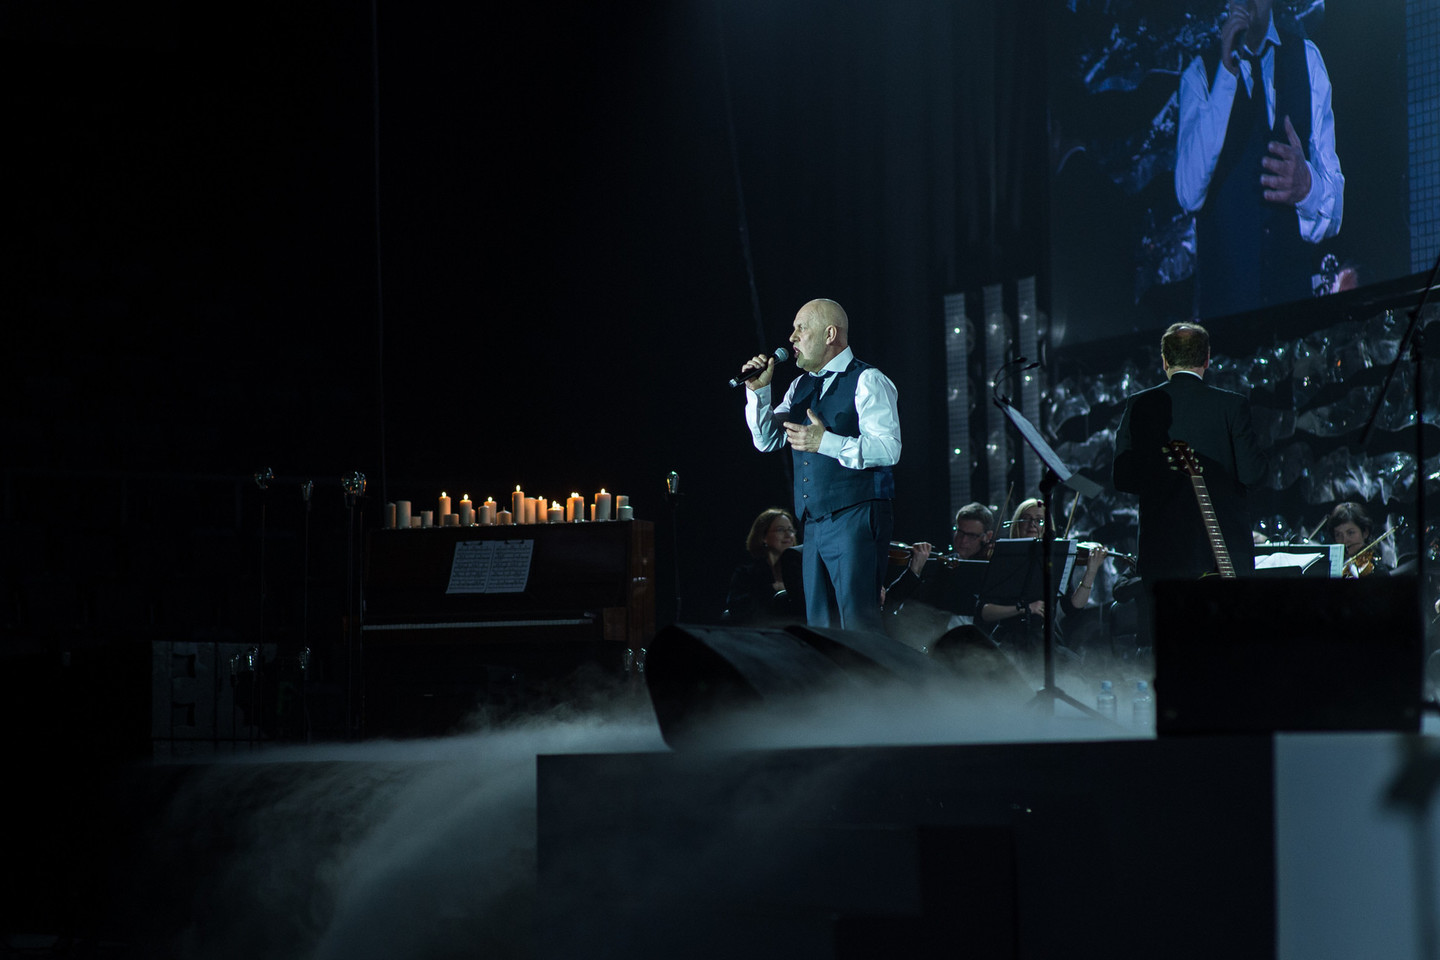 Ovidijaus Vyšniausko koncerte į sceną Vytautas Grubliauskas – Kongas lipo net sugipsuota ranka.<br>Organizatorių nuotr.